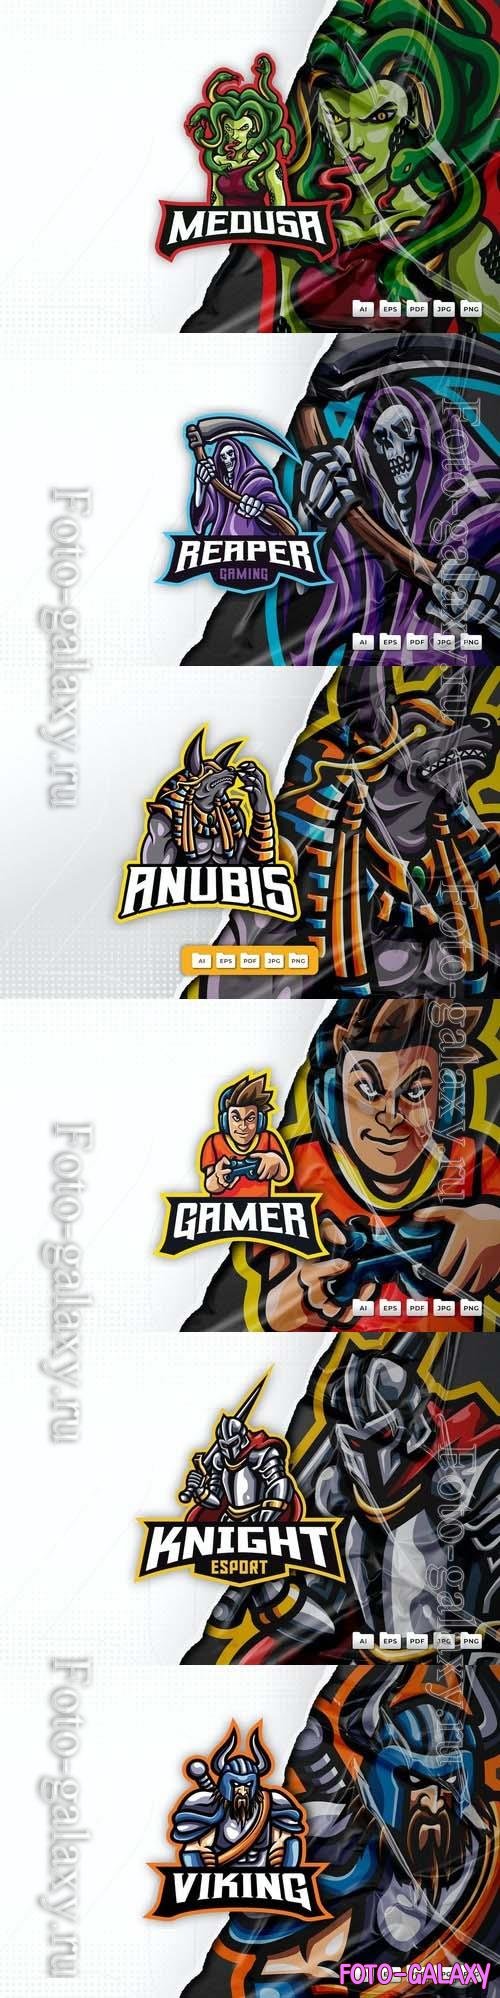 Viking, medusa, knight, grim reaper gamer, anubis, mascot logo design